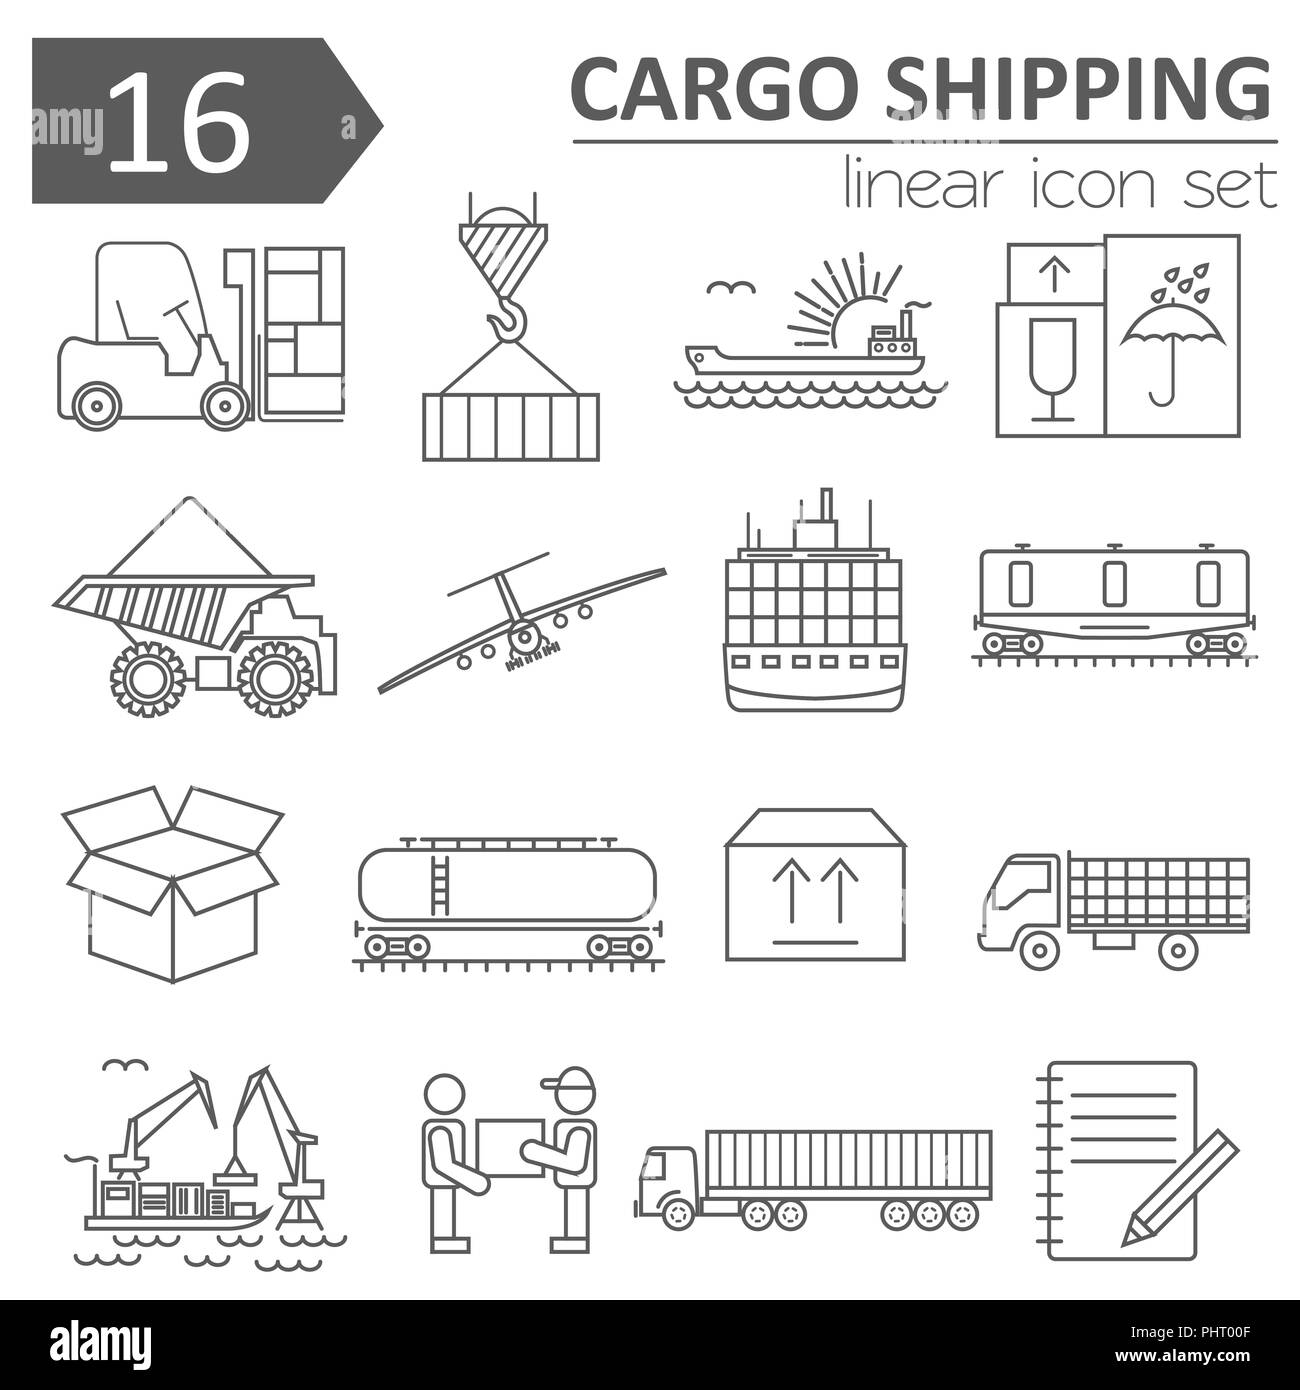 Cargo Versand Lieferzeit Icon Set. Thin Line Design. Vector Illustration Stock Vektor